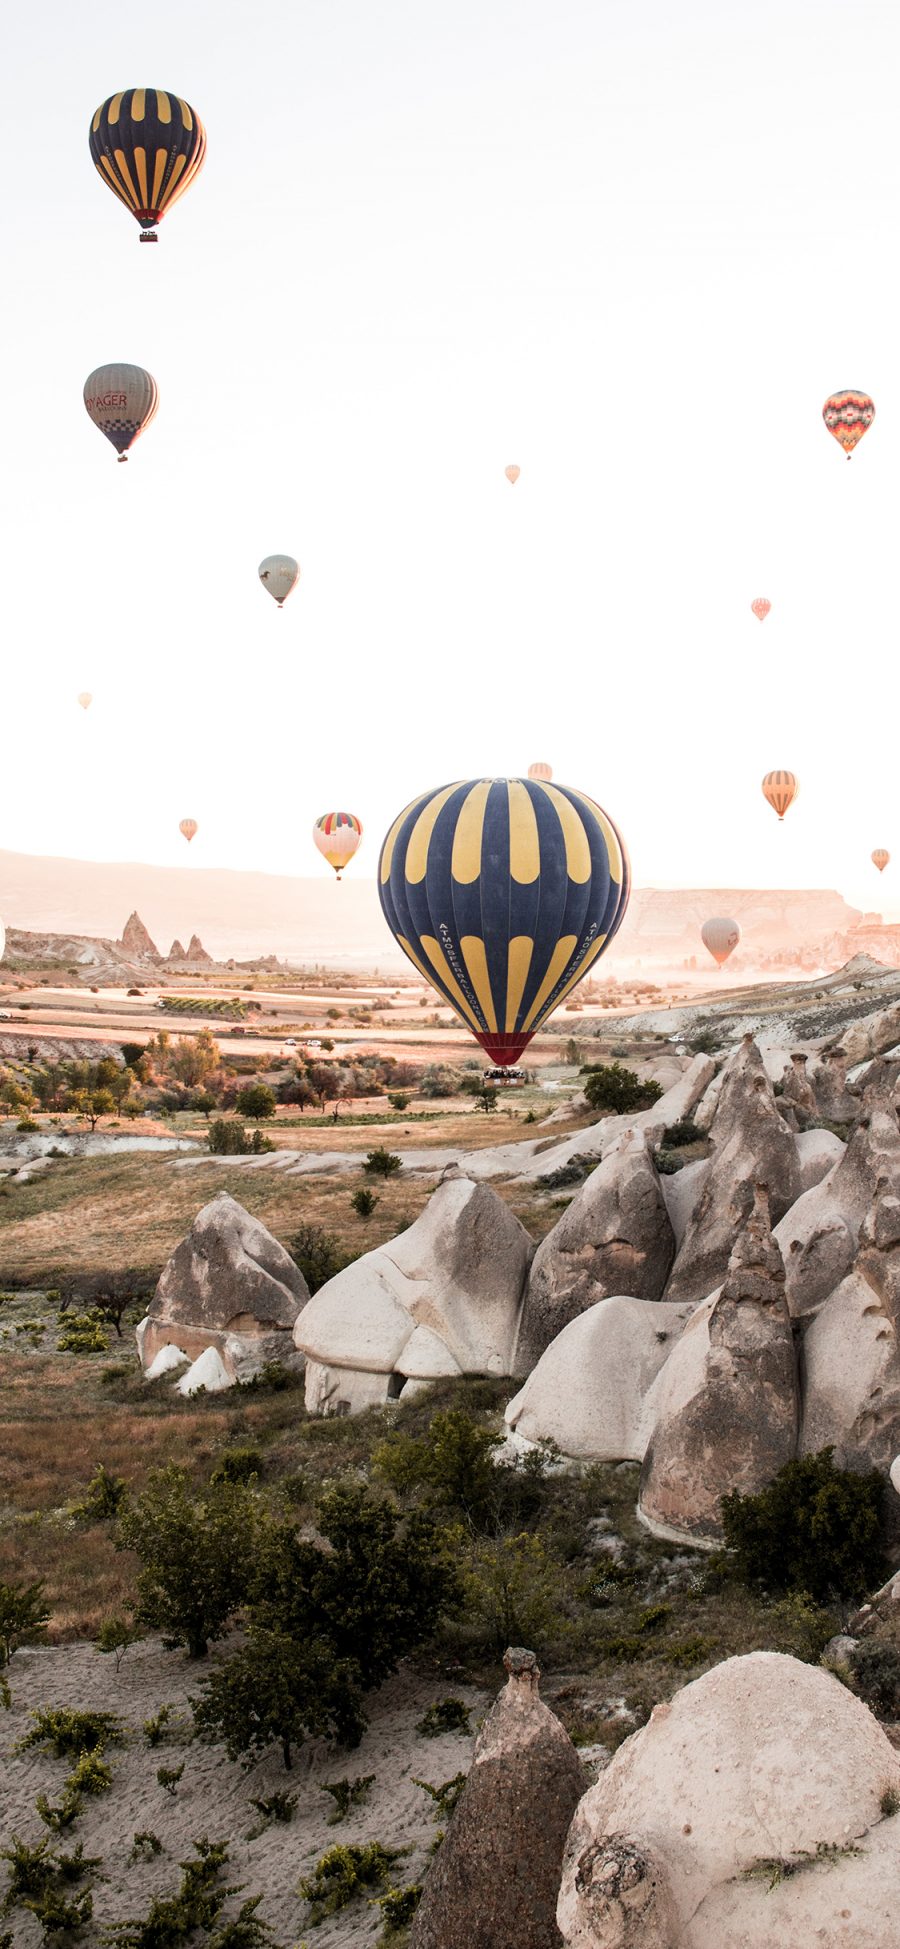 [2436×1125]土耳其 景点 岩石 热气球 浪漫 苹果手机壁纸图片